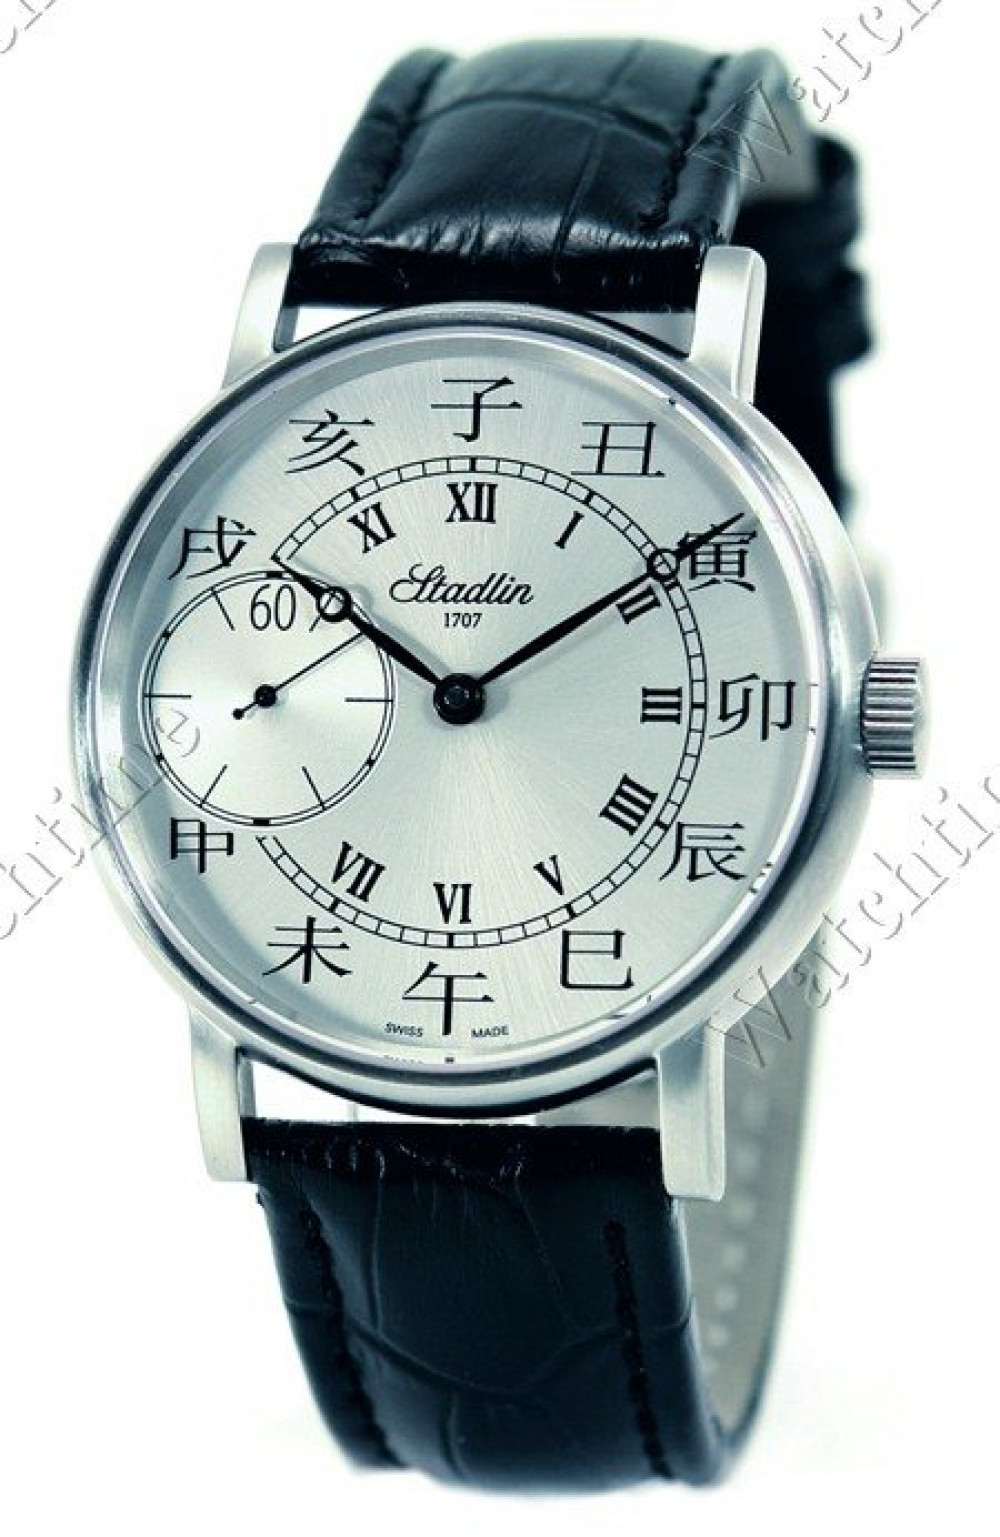 Zegarek firmy Stadlin, model FLS28